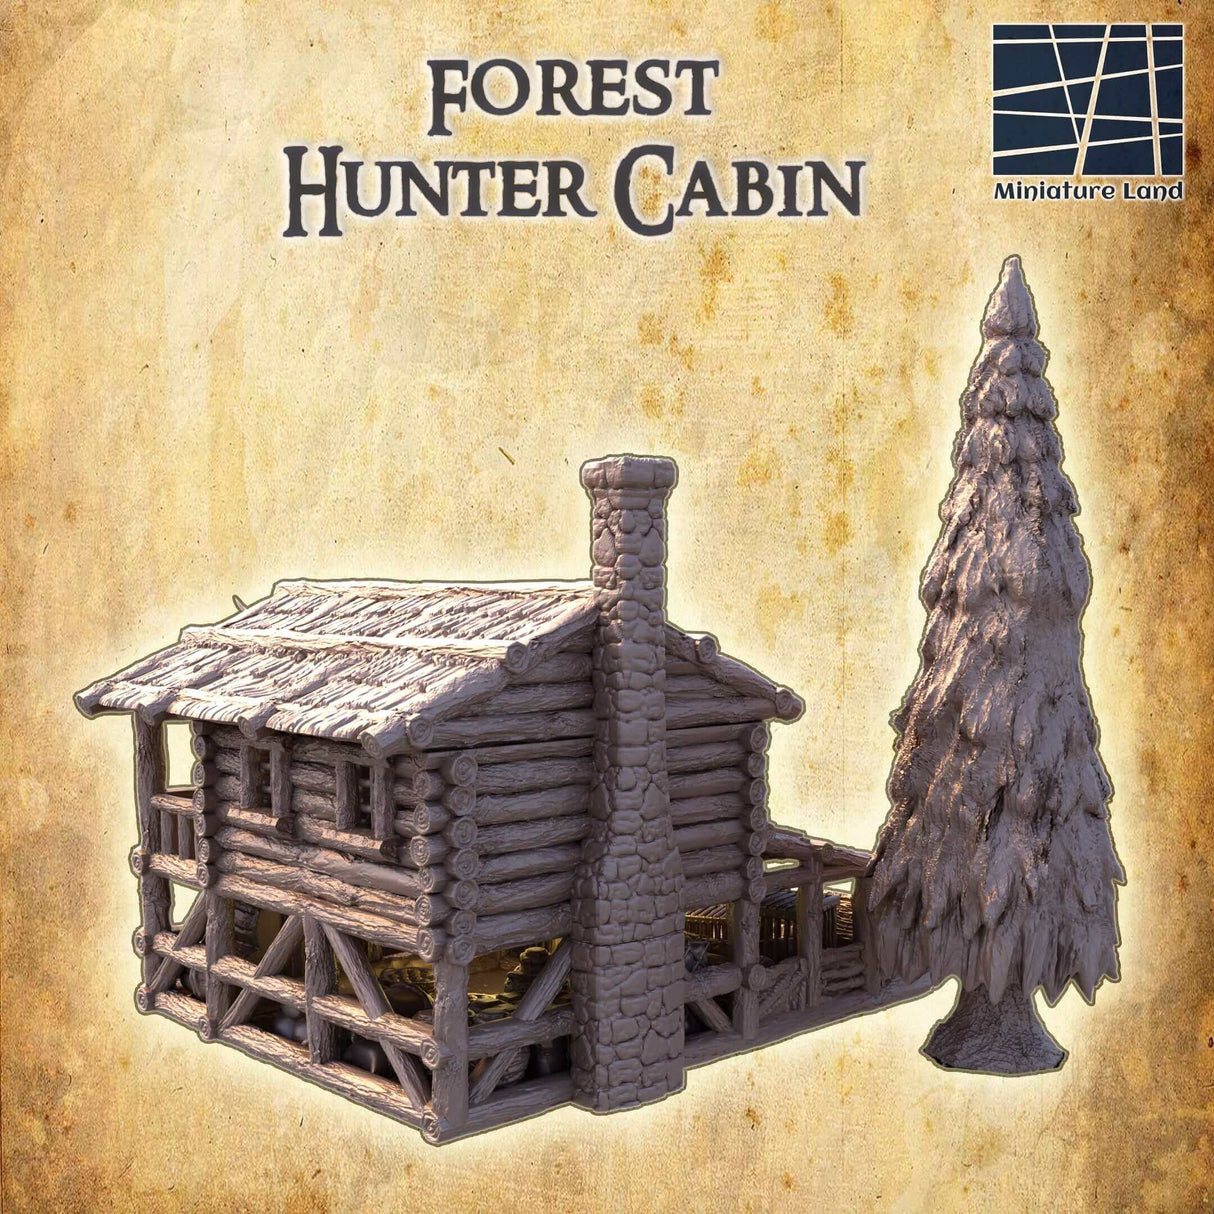 FDM-gedruckte Waldjagdhütte, perfekt für Rollenspiele